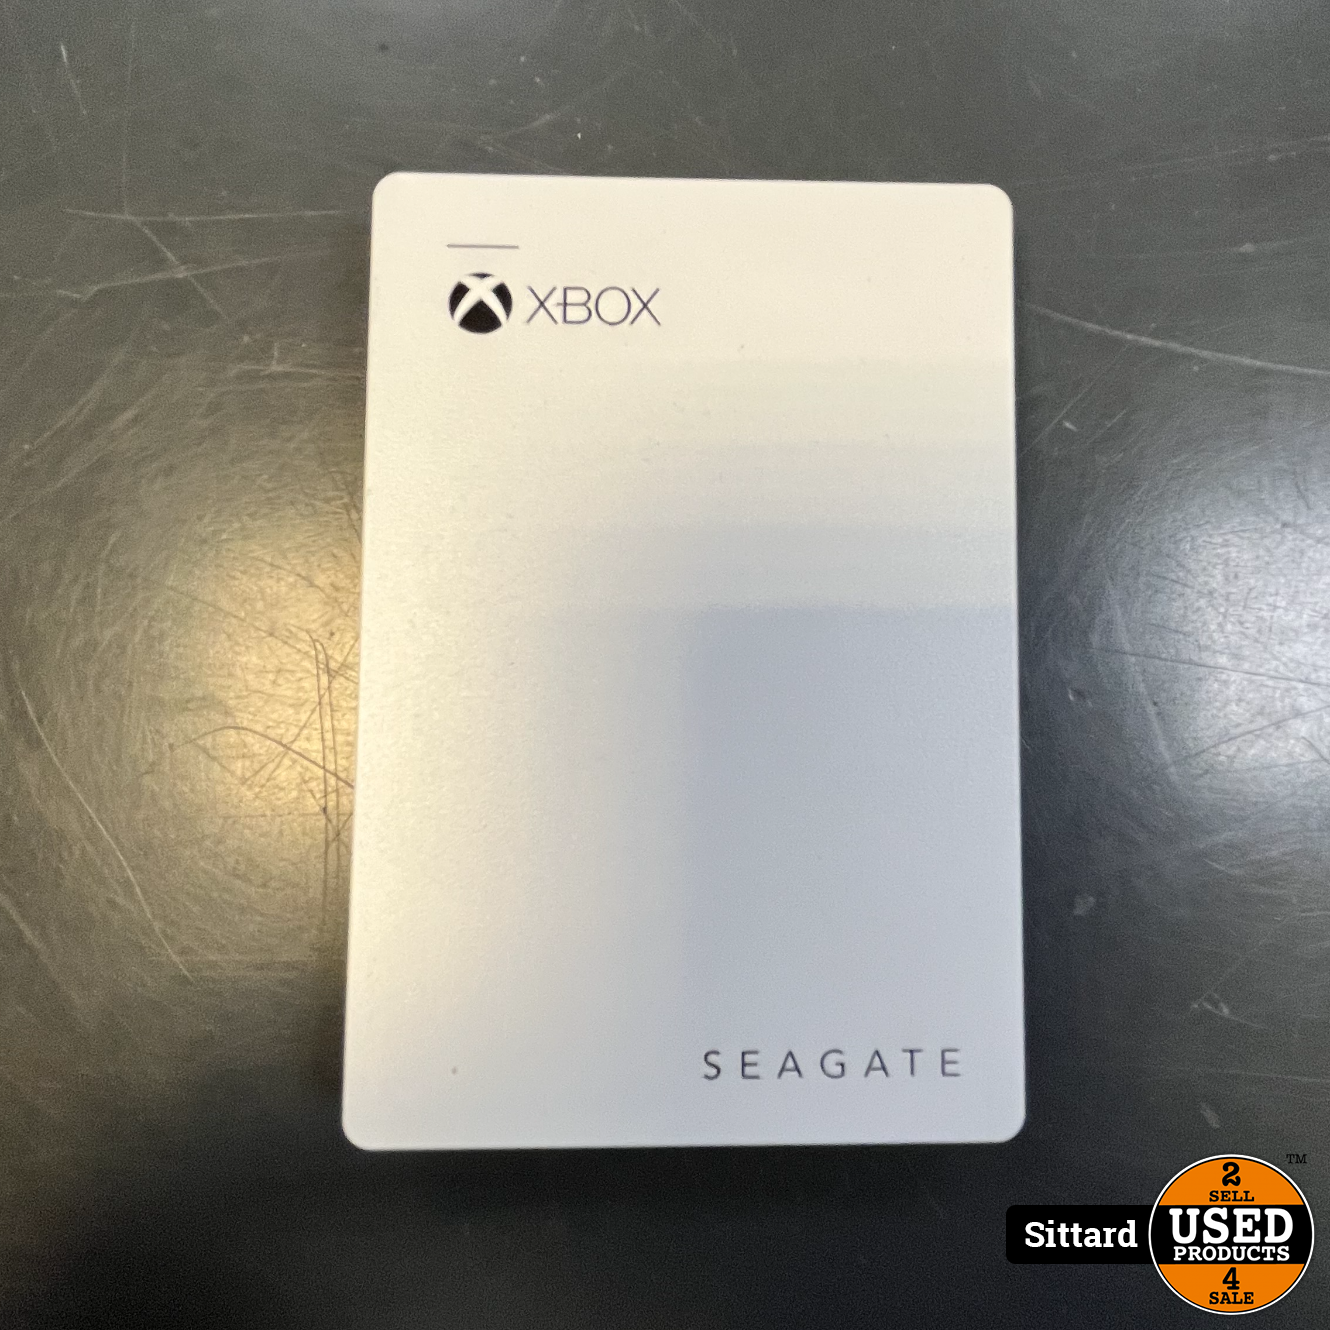 De waarheid vertellen een miljoen Concreet Xbox - Seagate Externe harde schijf, 2TB, In nette staat - Used Products  Sittard